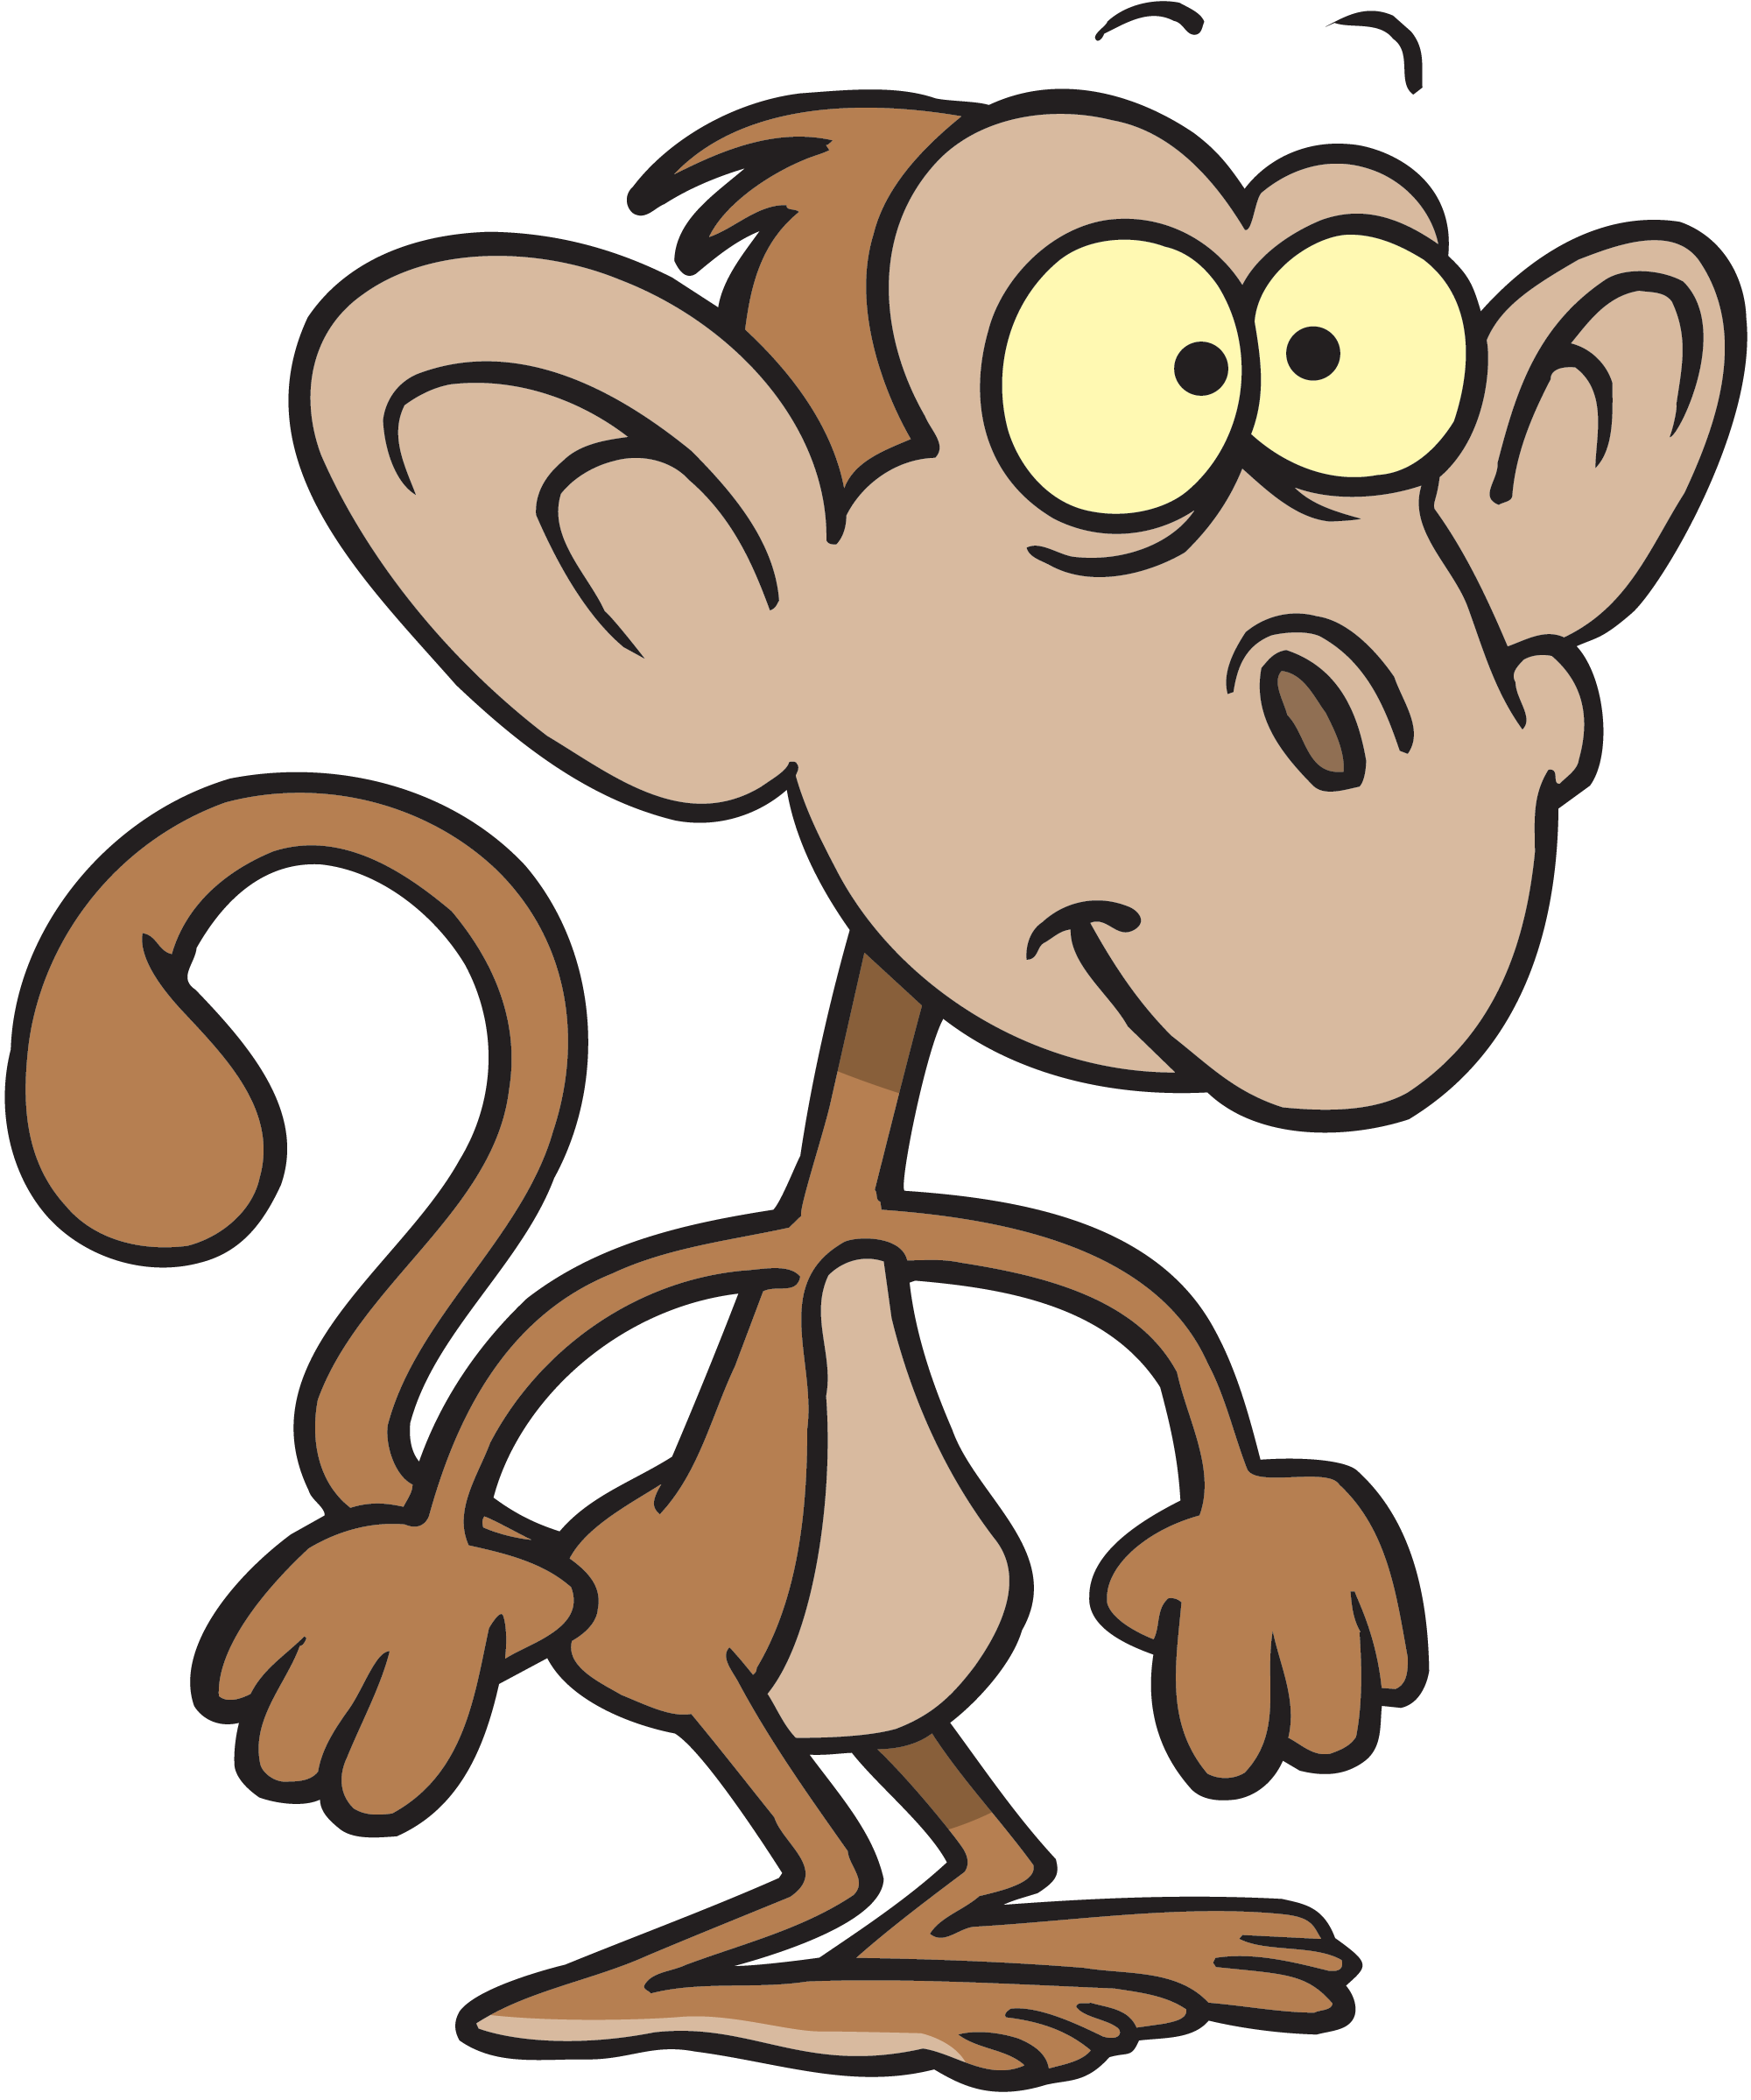 Monkey Image Cartoon 